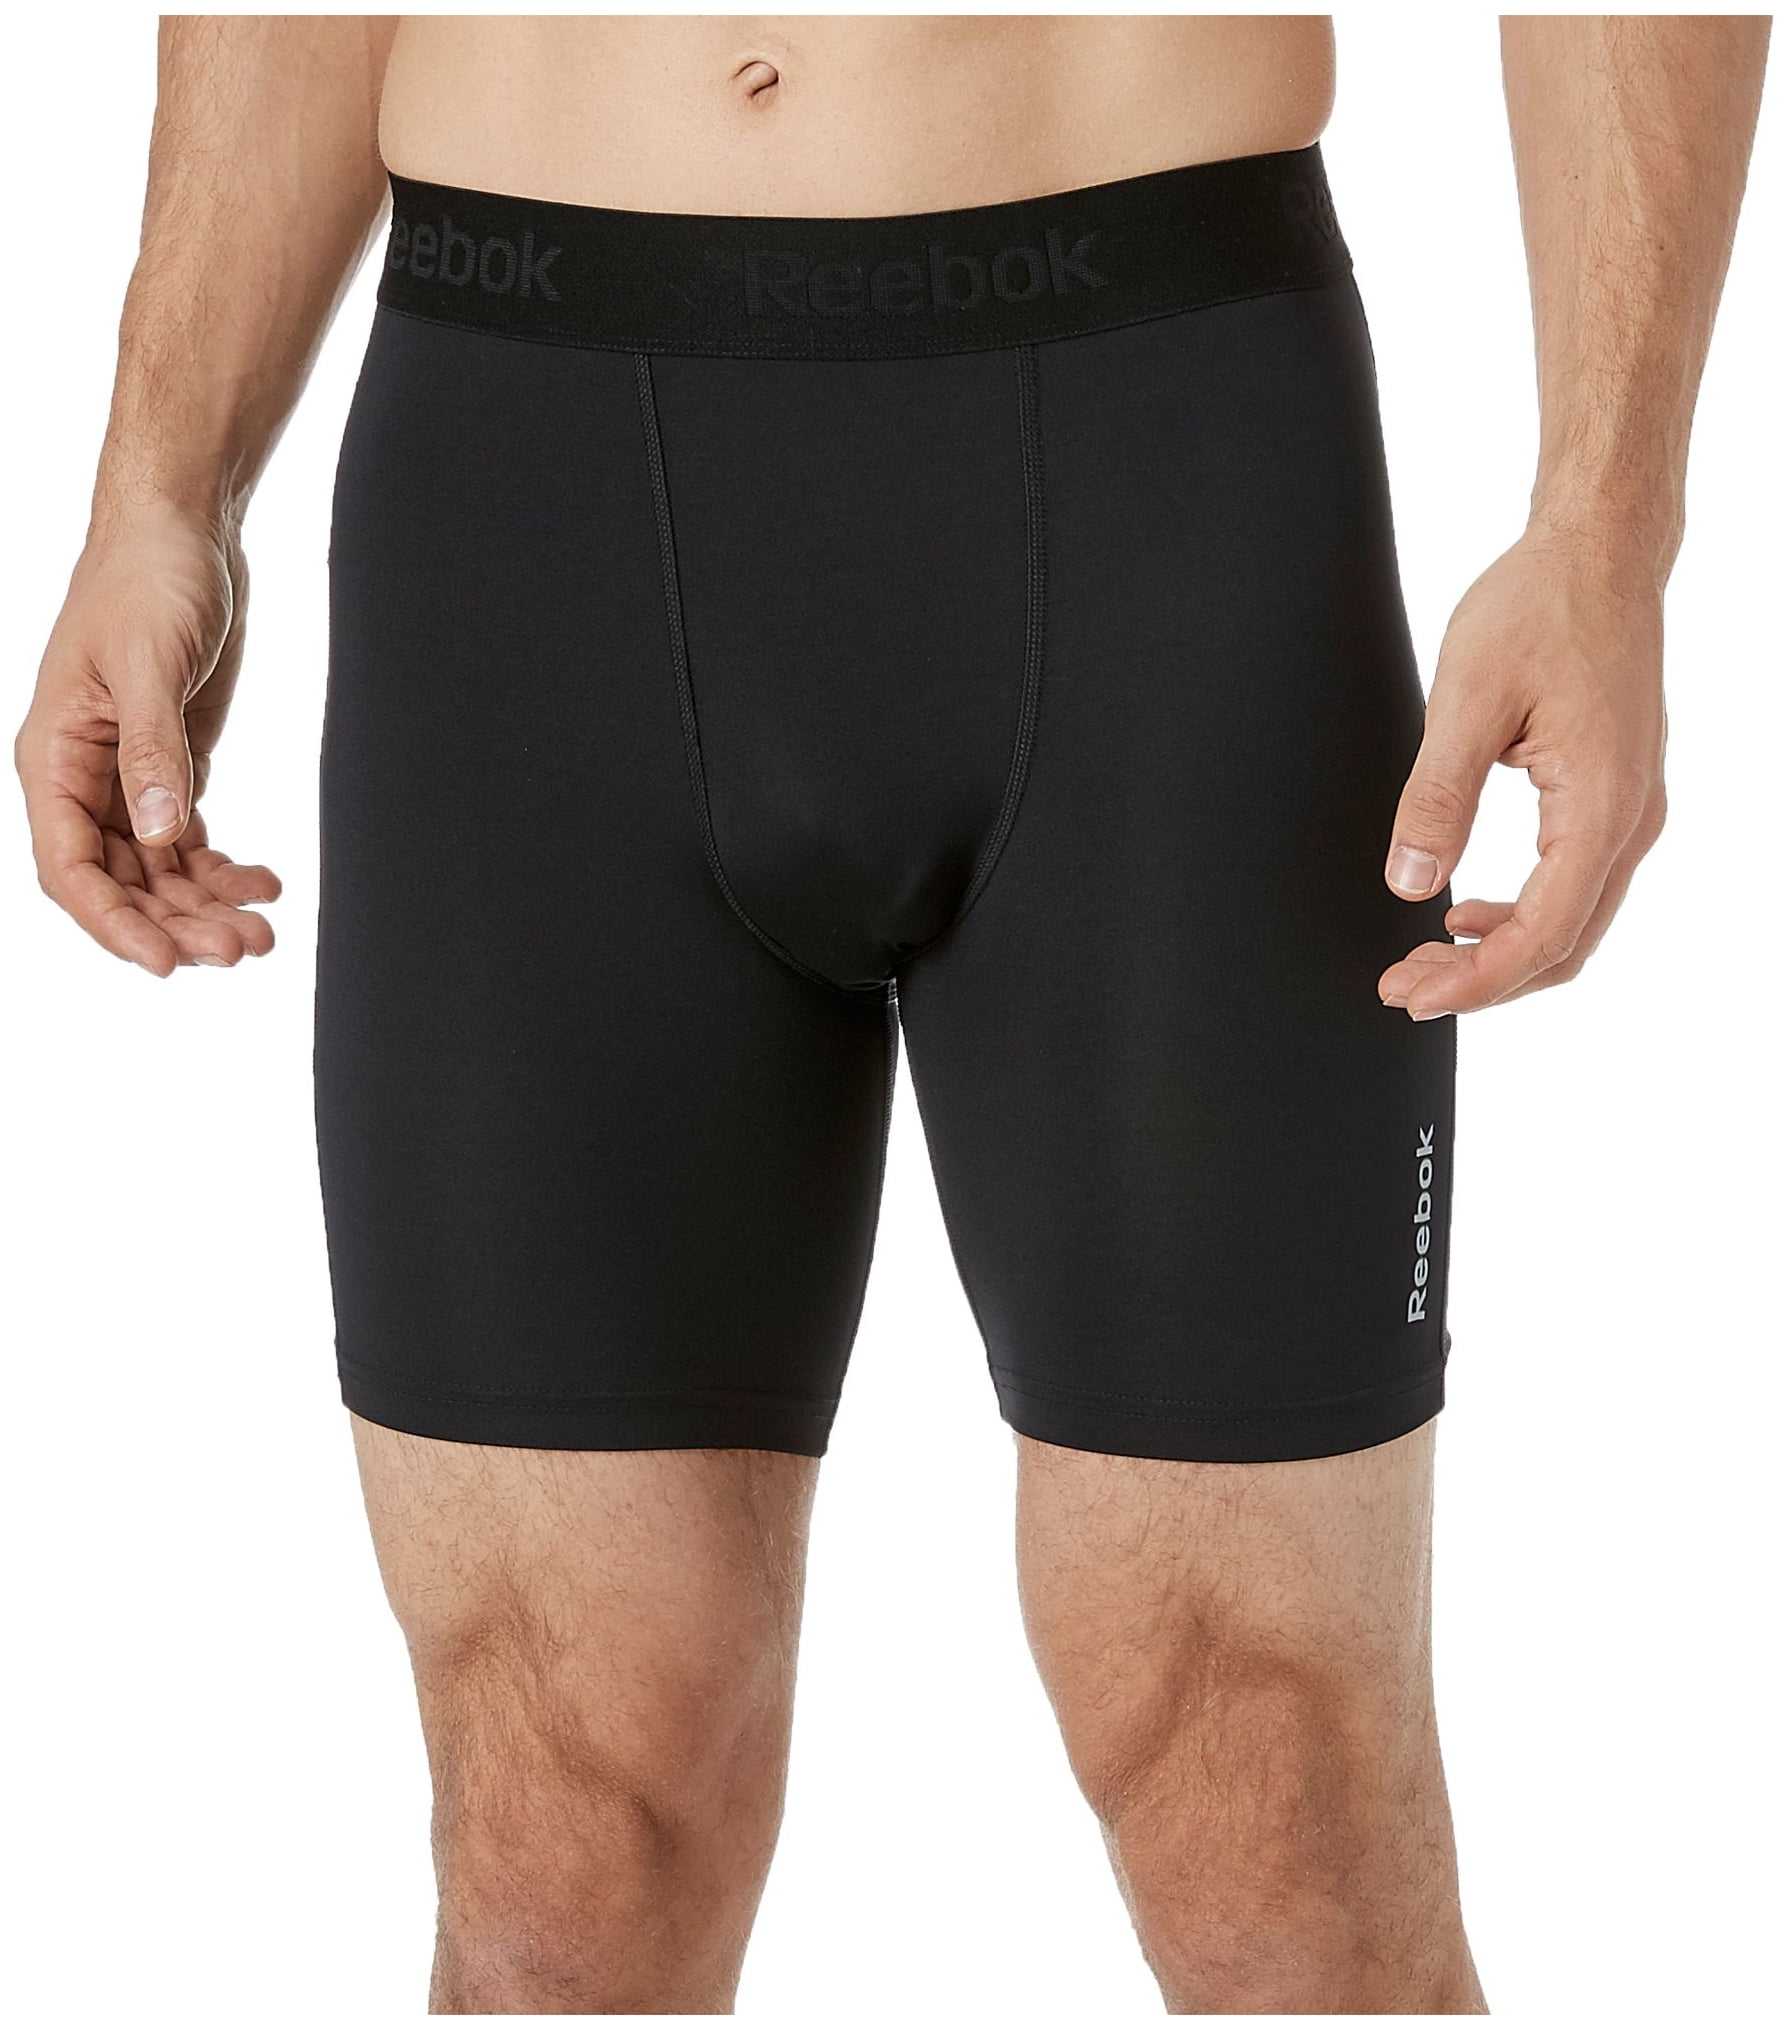 Download Reebok - reebok men's 7'' compression shorts - Walmart.com ...